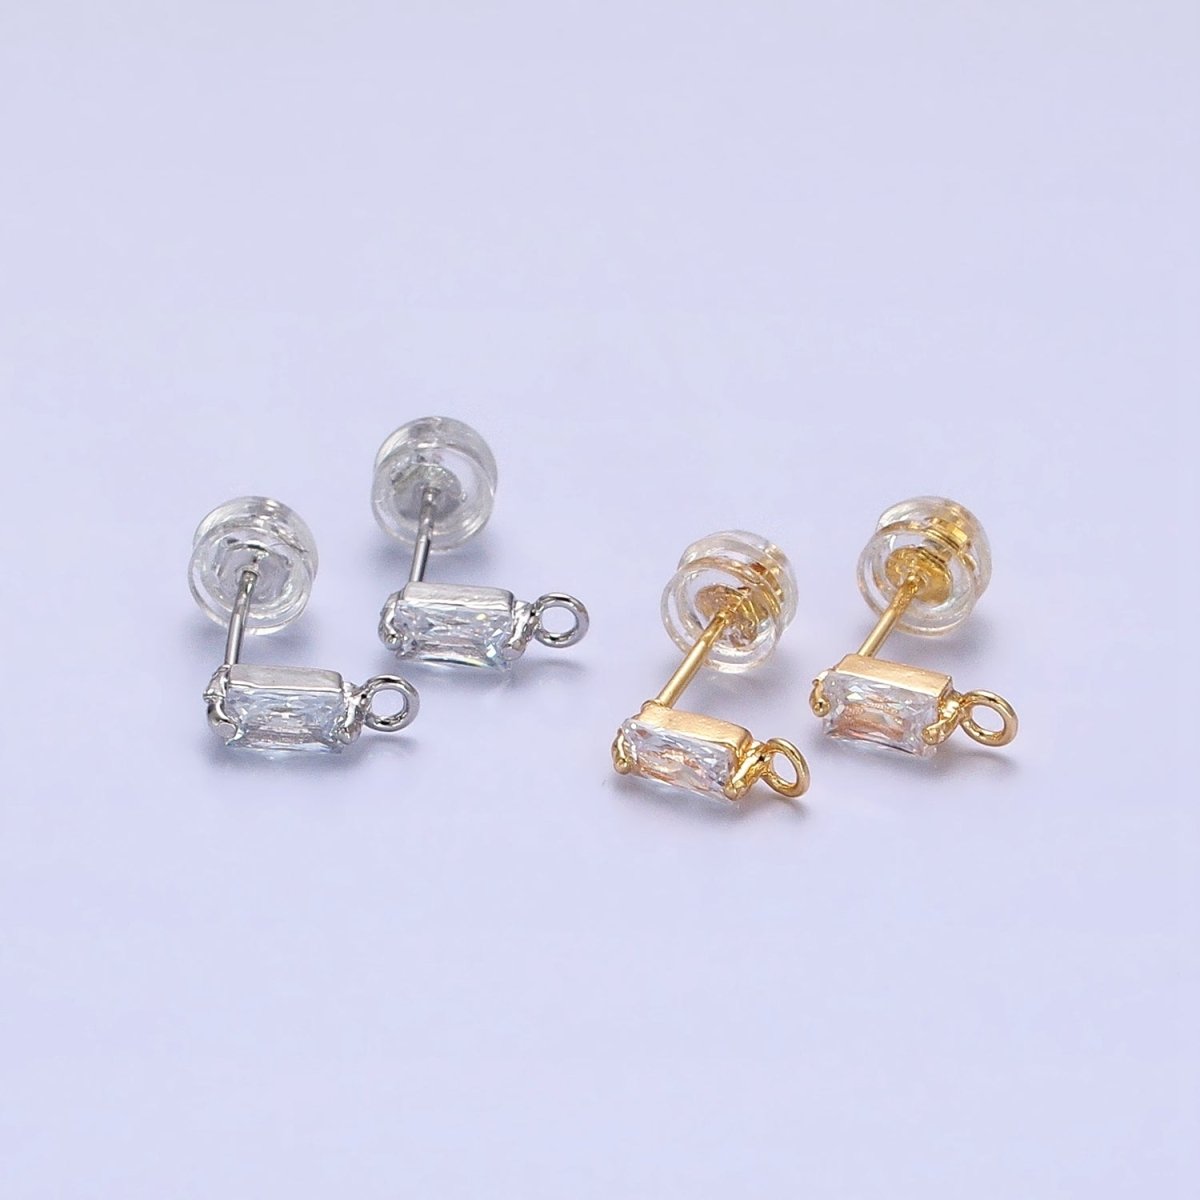 Emerald Cut CZ Diamond Stud Earring Gold Earring Post with Open Link for Earring Supply Z-178 Z-179 - DLUXCA